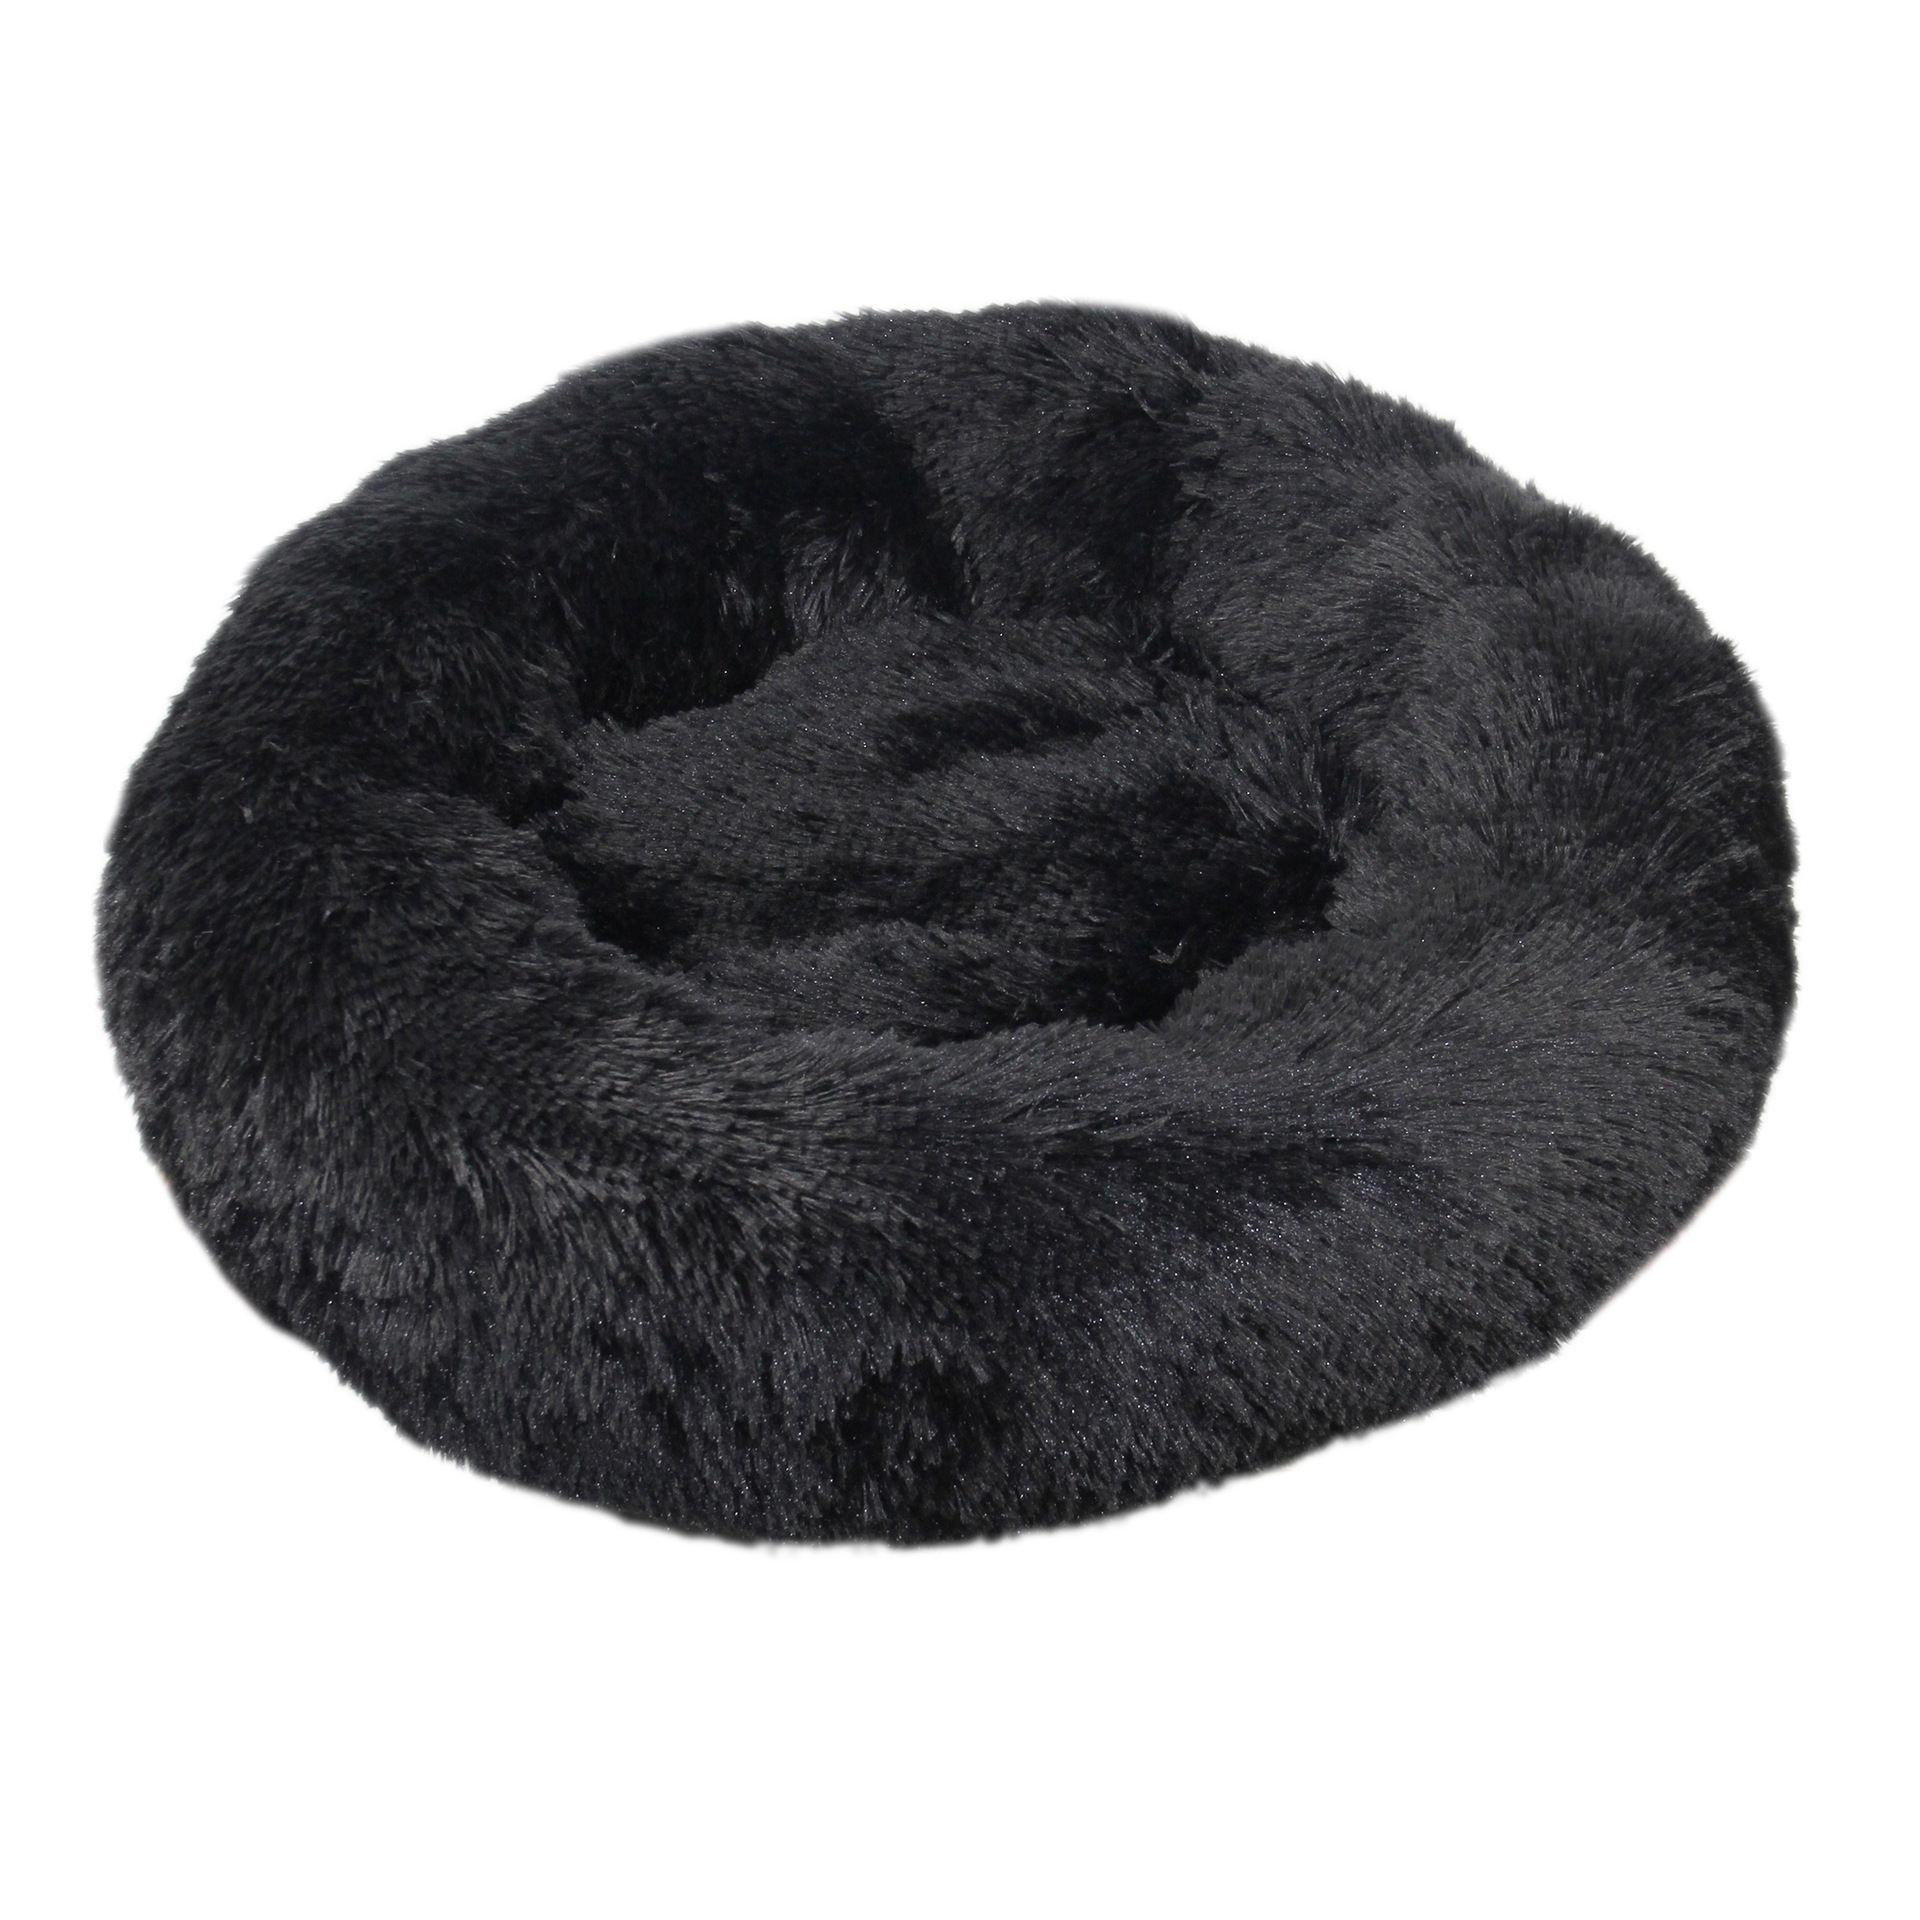 Handmade Wholesale Soft Luxury Round Designer Plush Dog Cat Pet Beds